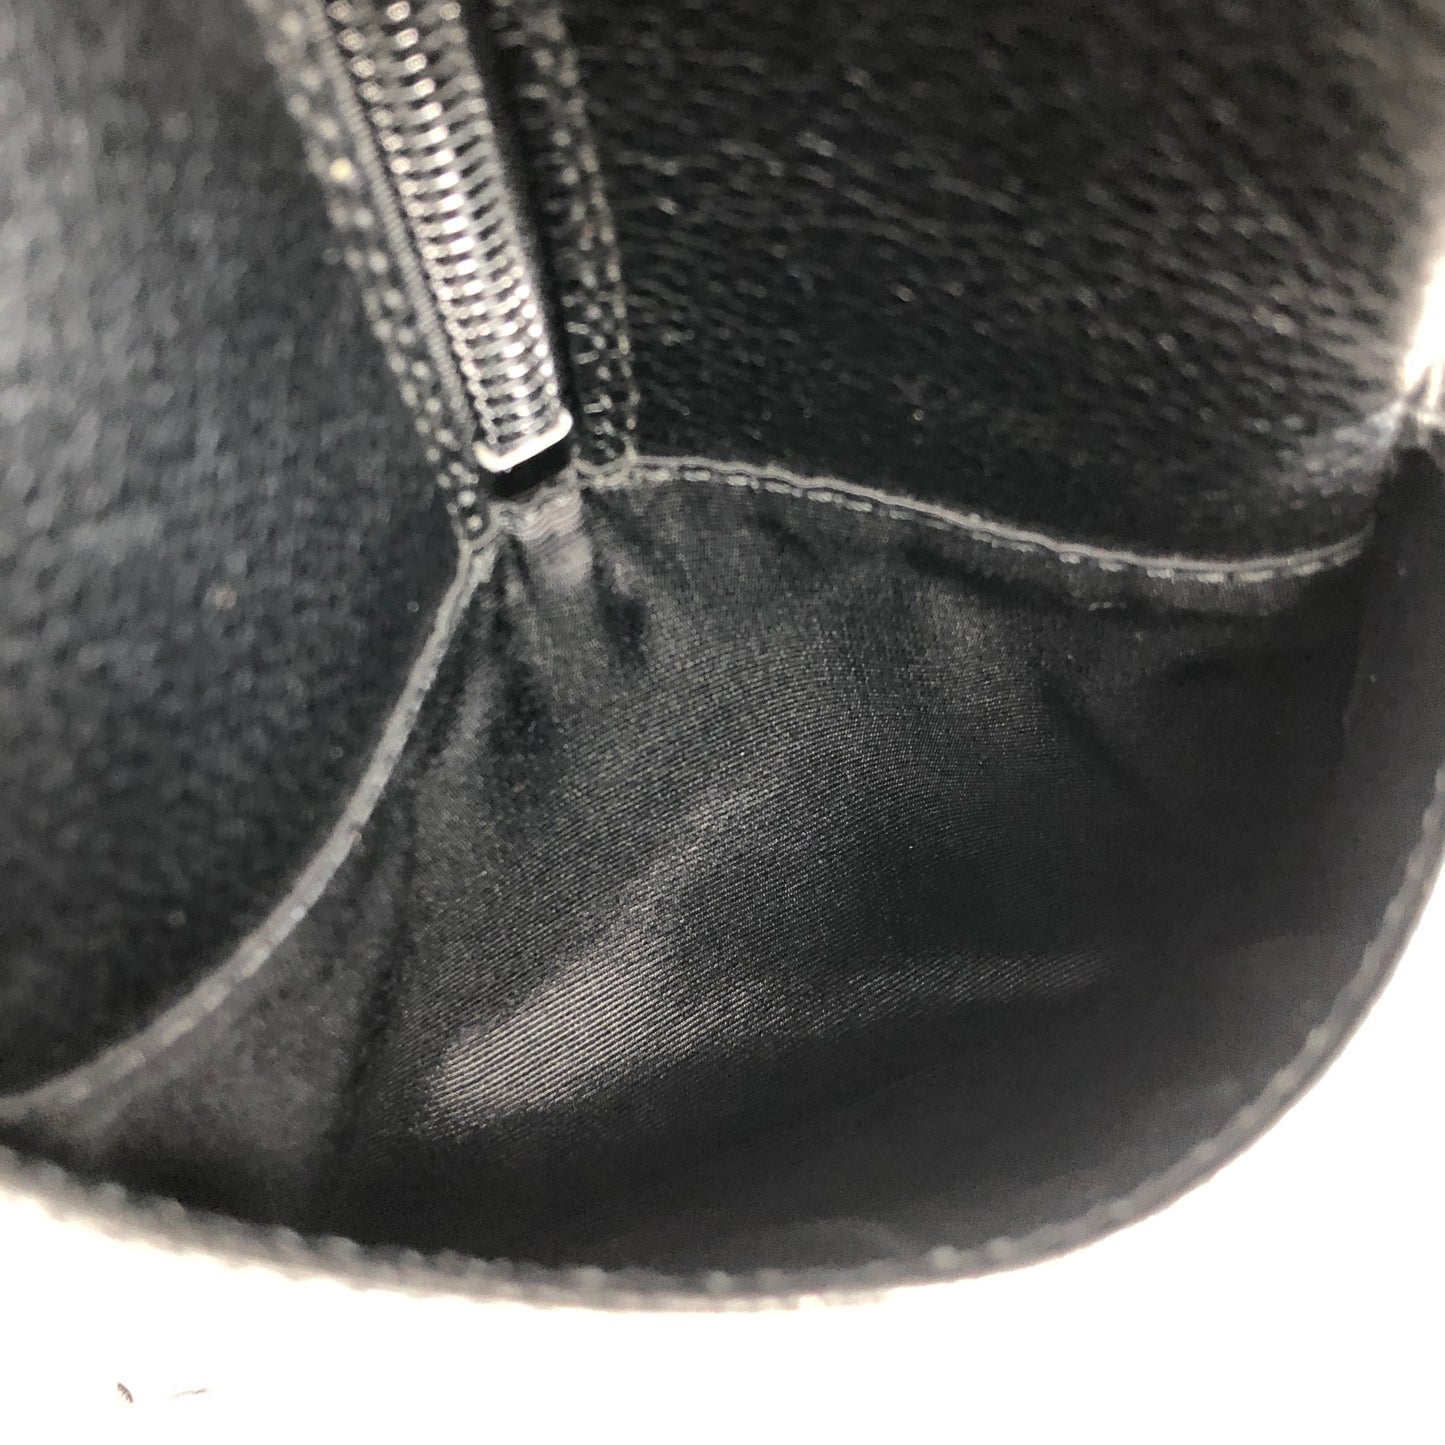 Yves Saint Laurent YSL Logo Leather Handbag Boston bag Black Vintage vmt4zv